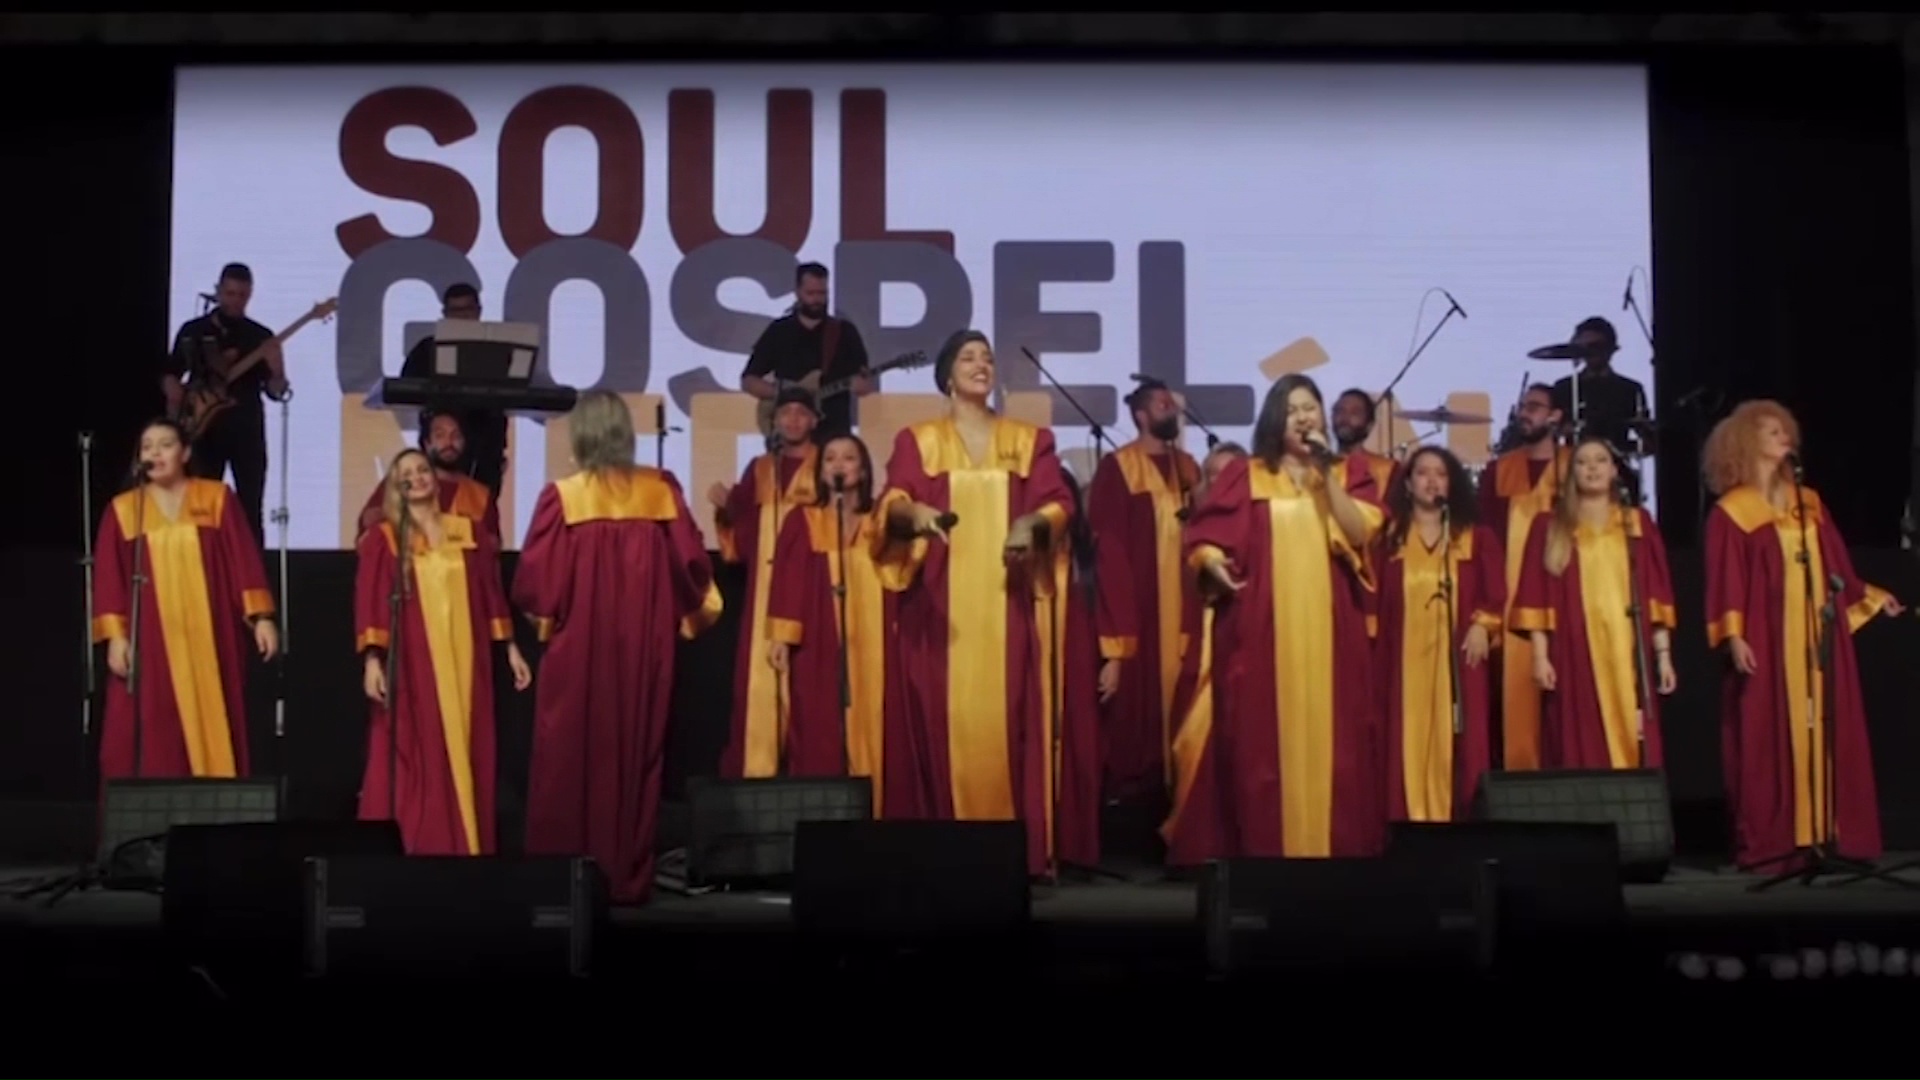 Concierto de Soul Gospel con varios ritmos